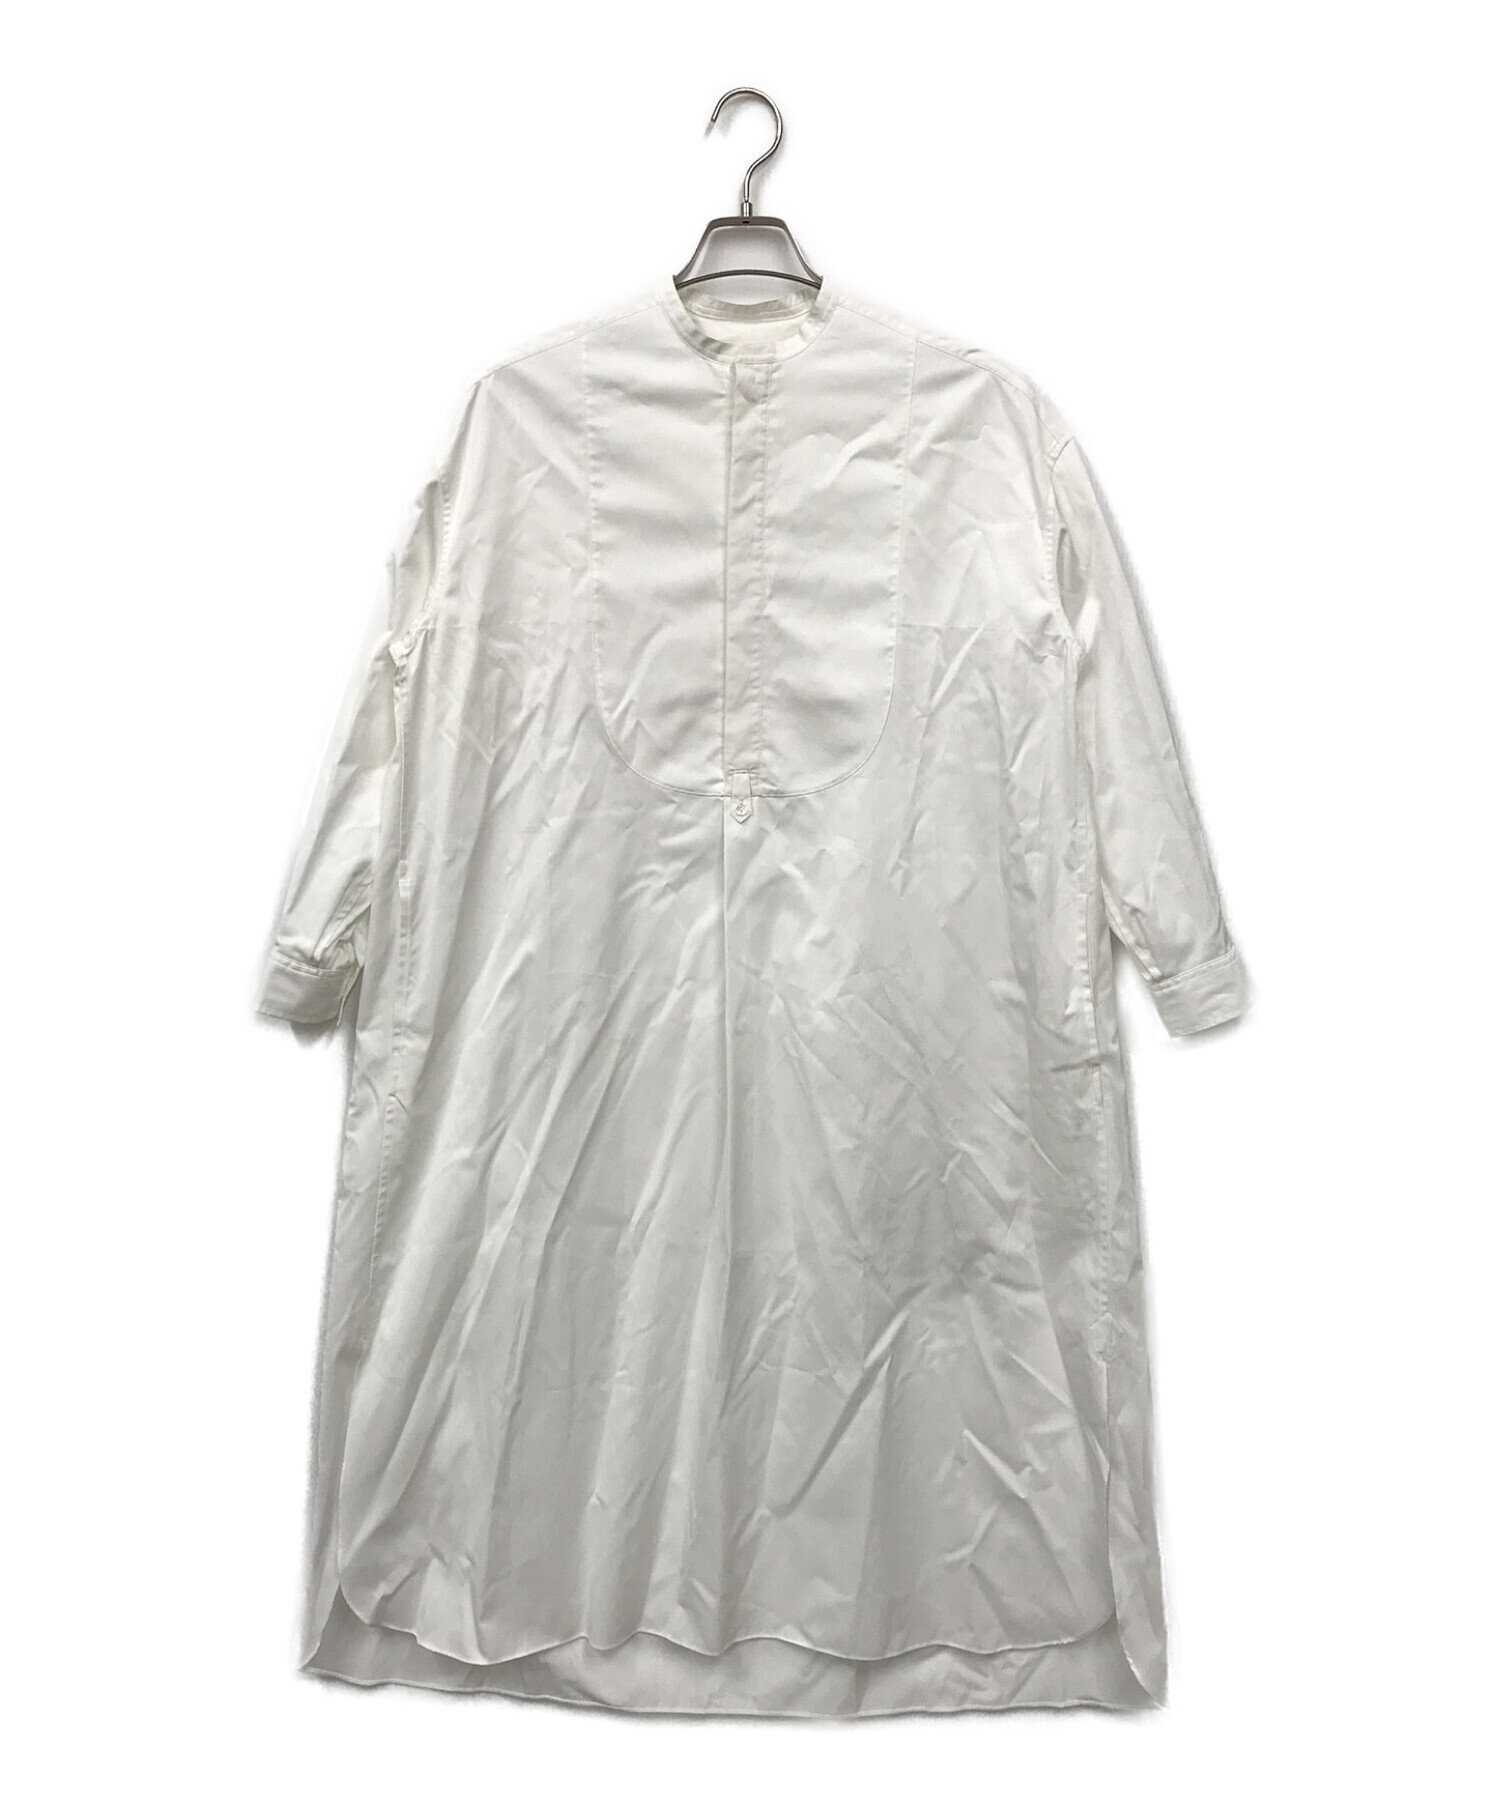 【専用購入不可】drawer ドゥロワー コットンノーカラーホワイトシャツドレス